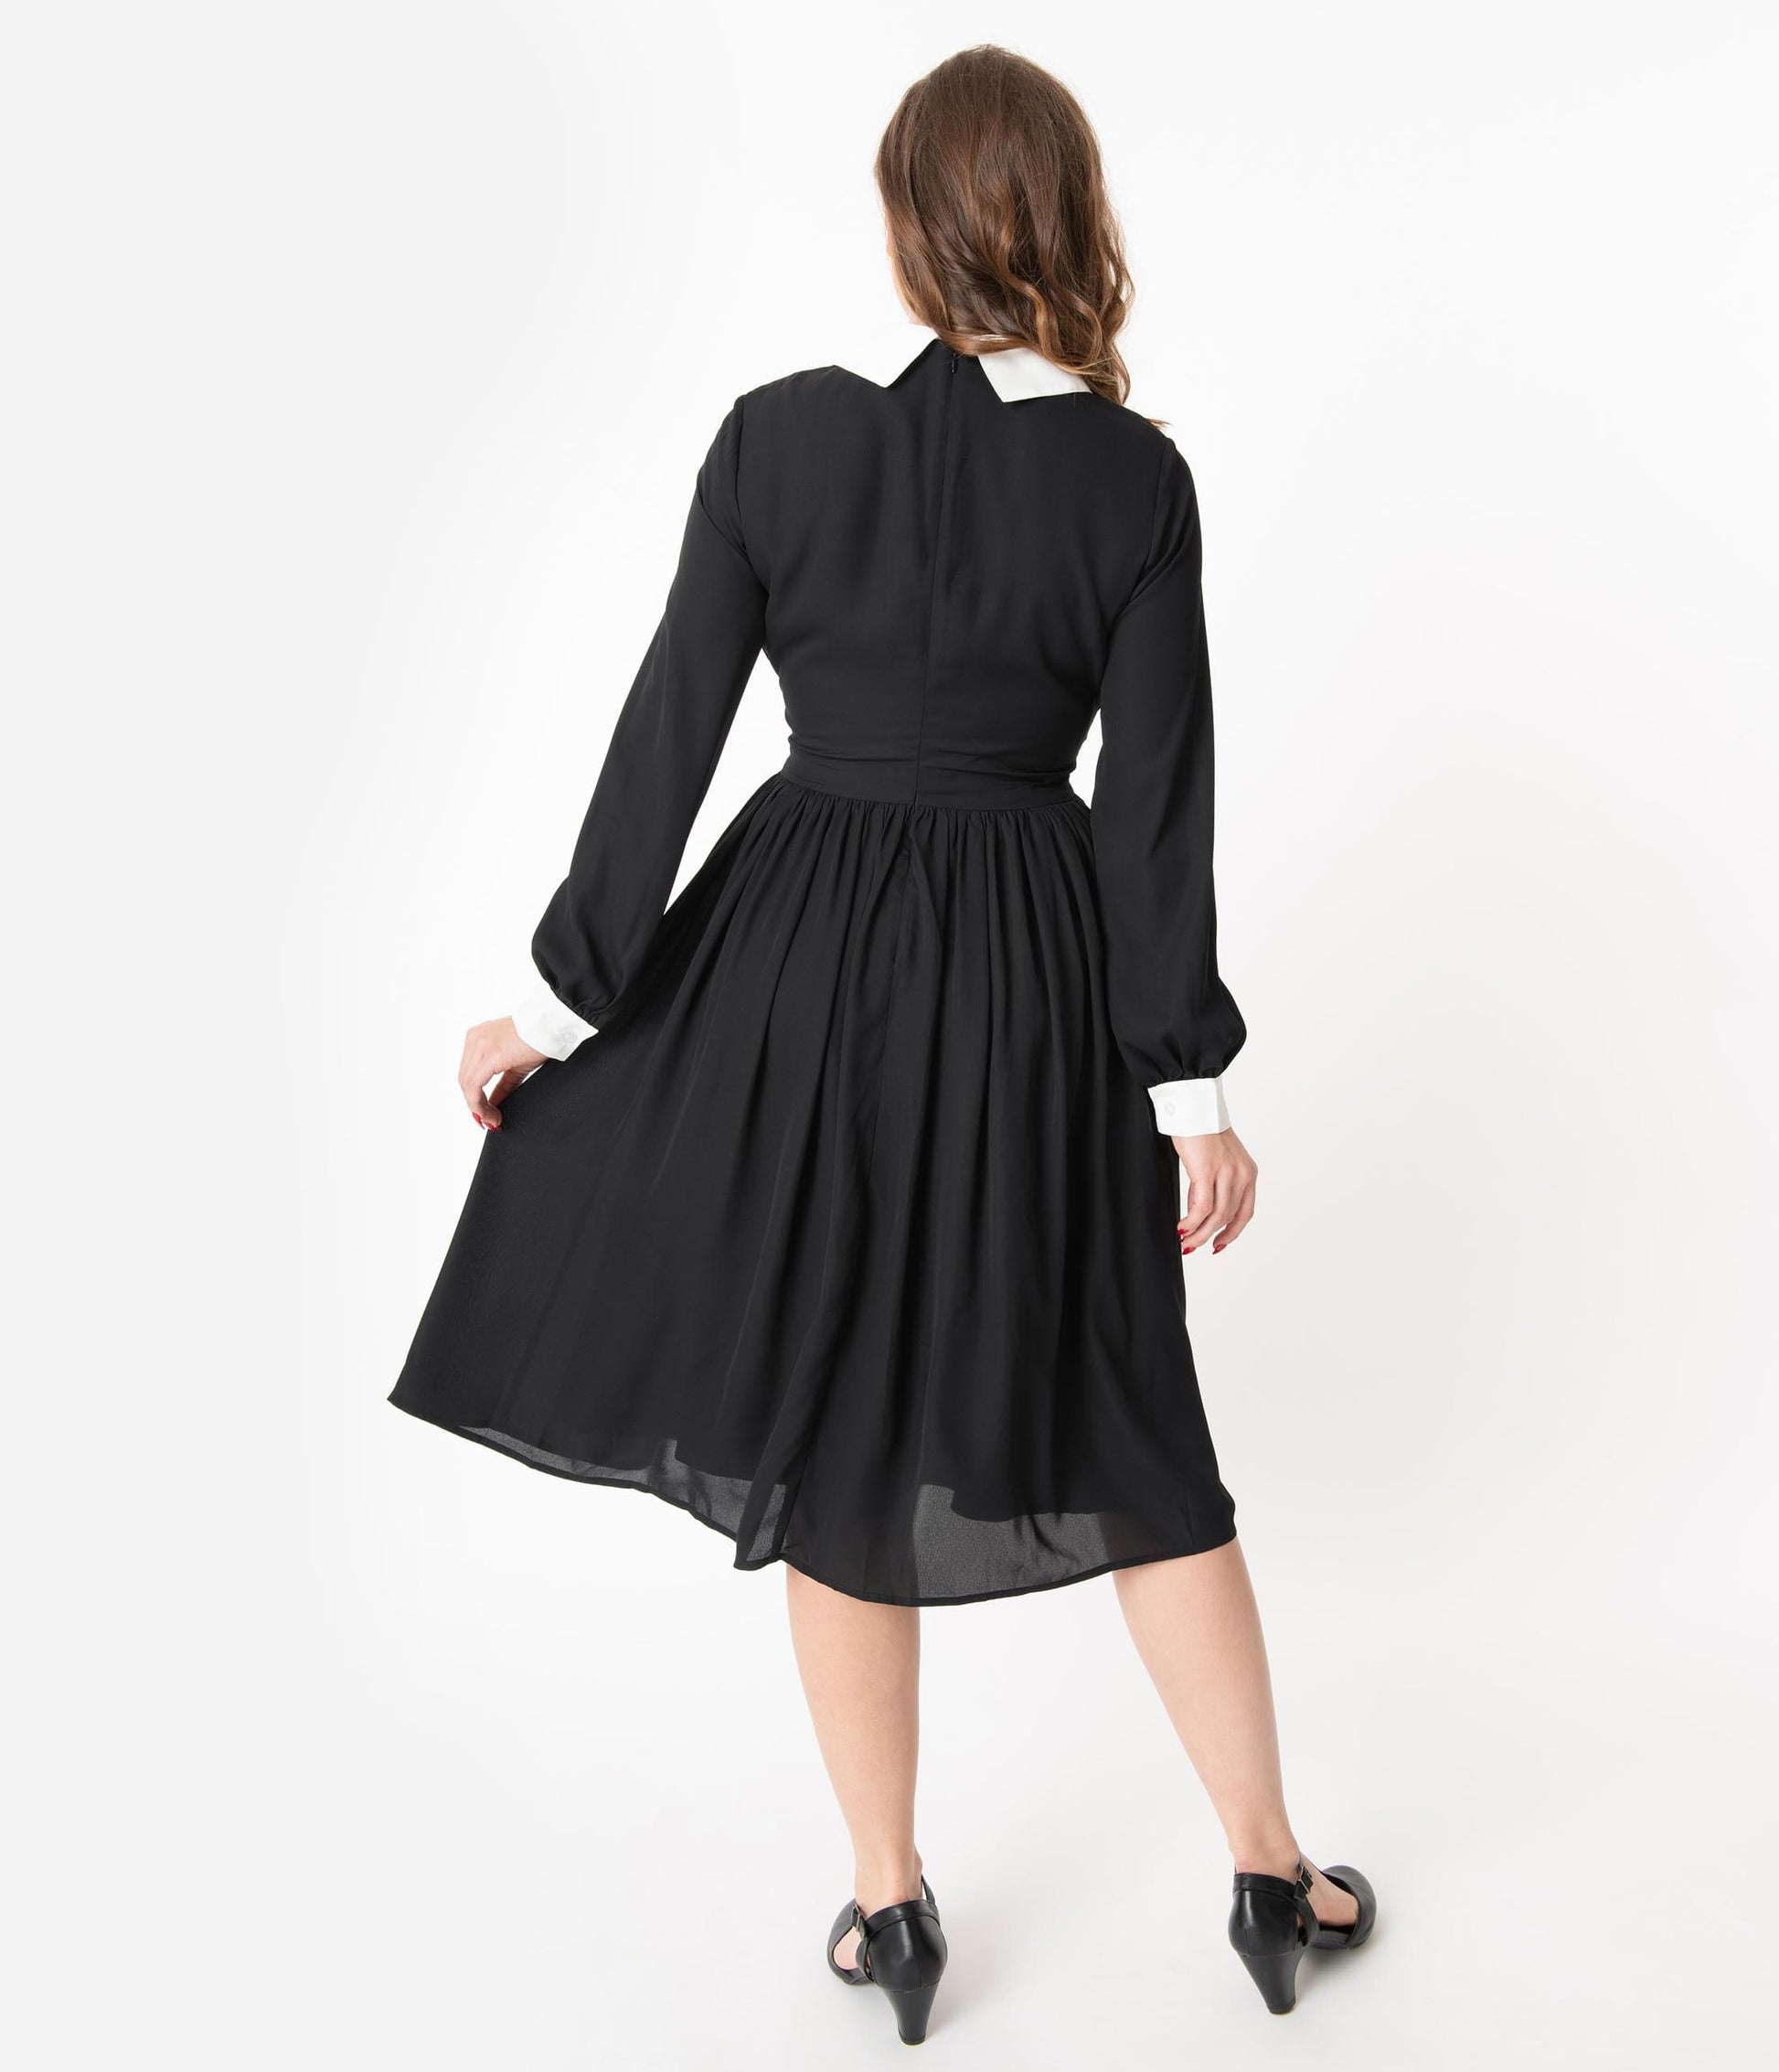 Unique Vintage 1940s Style Black & White Deirdre Shirt Dress